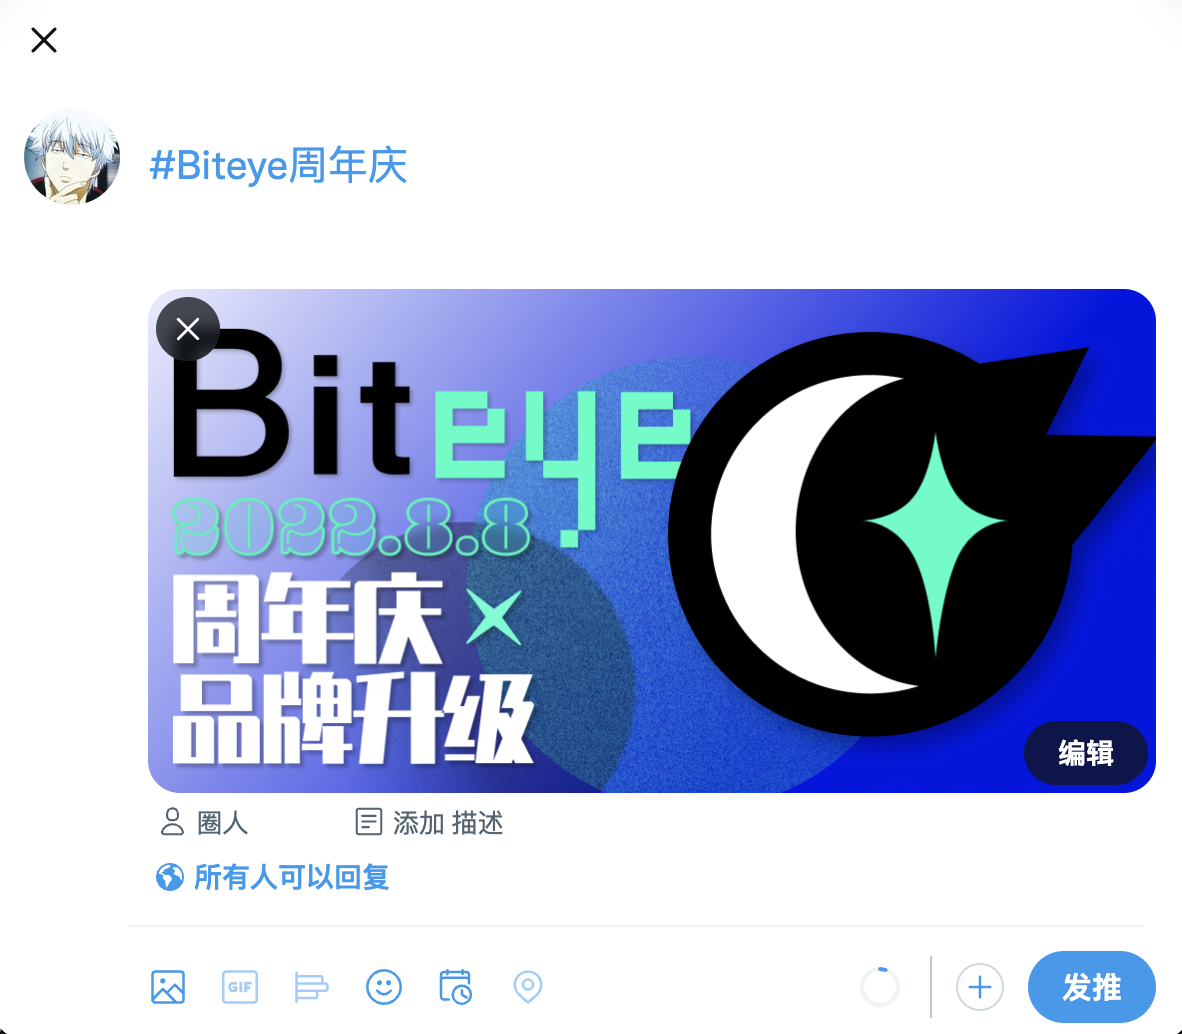 推特请加上话题 #Biteye周年庆